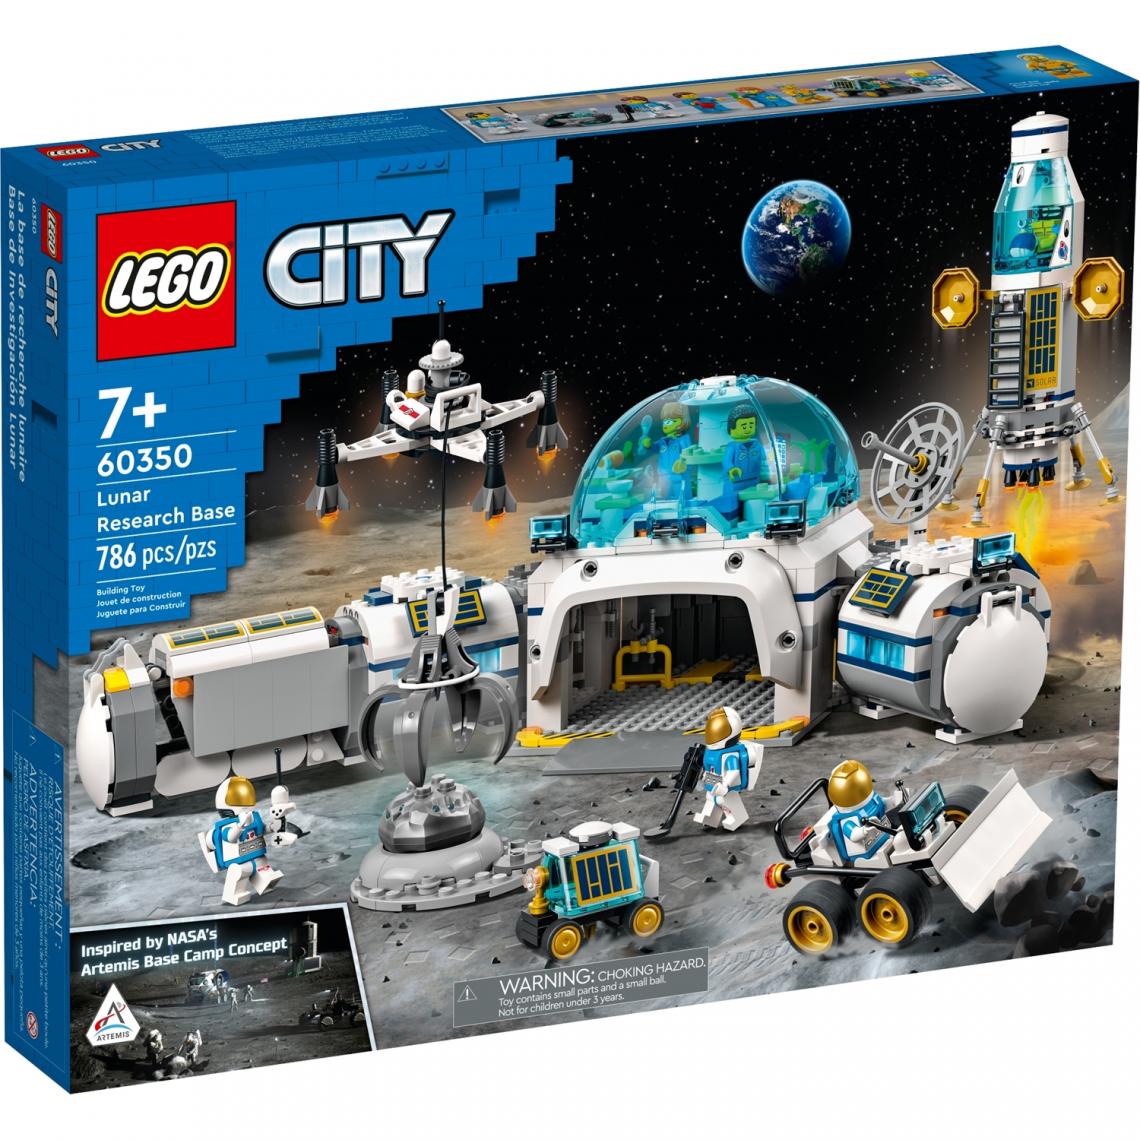 Lego - Lego 60350 - City La base de recherche lunaire - Briques et blocs